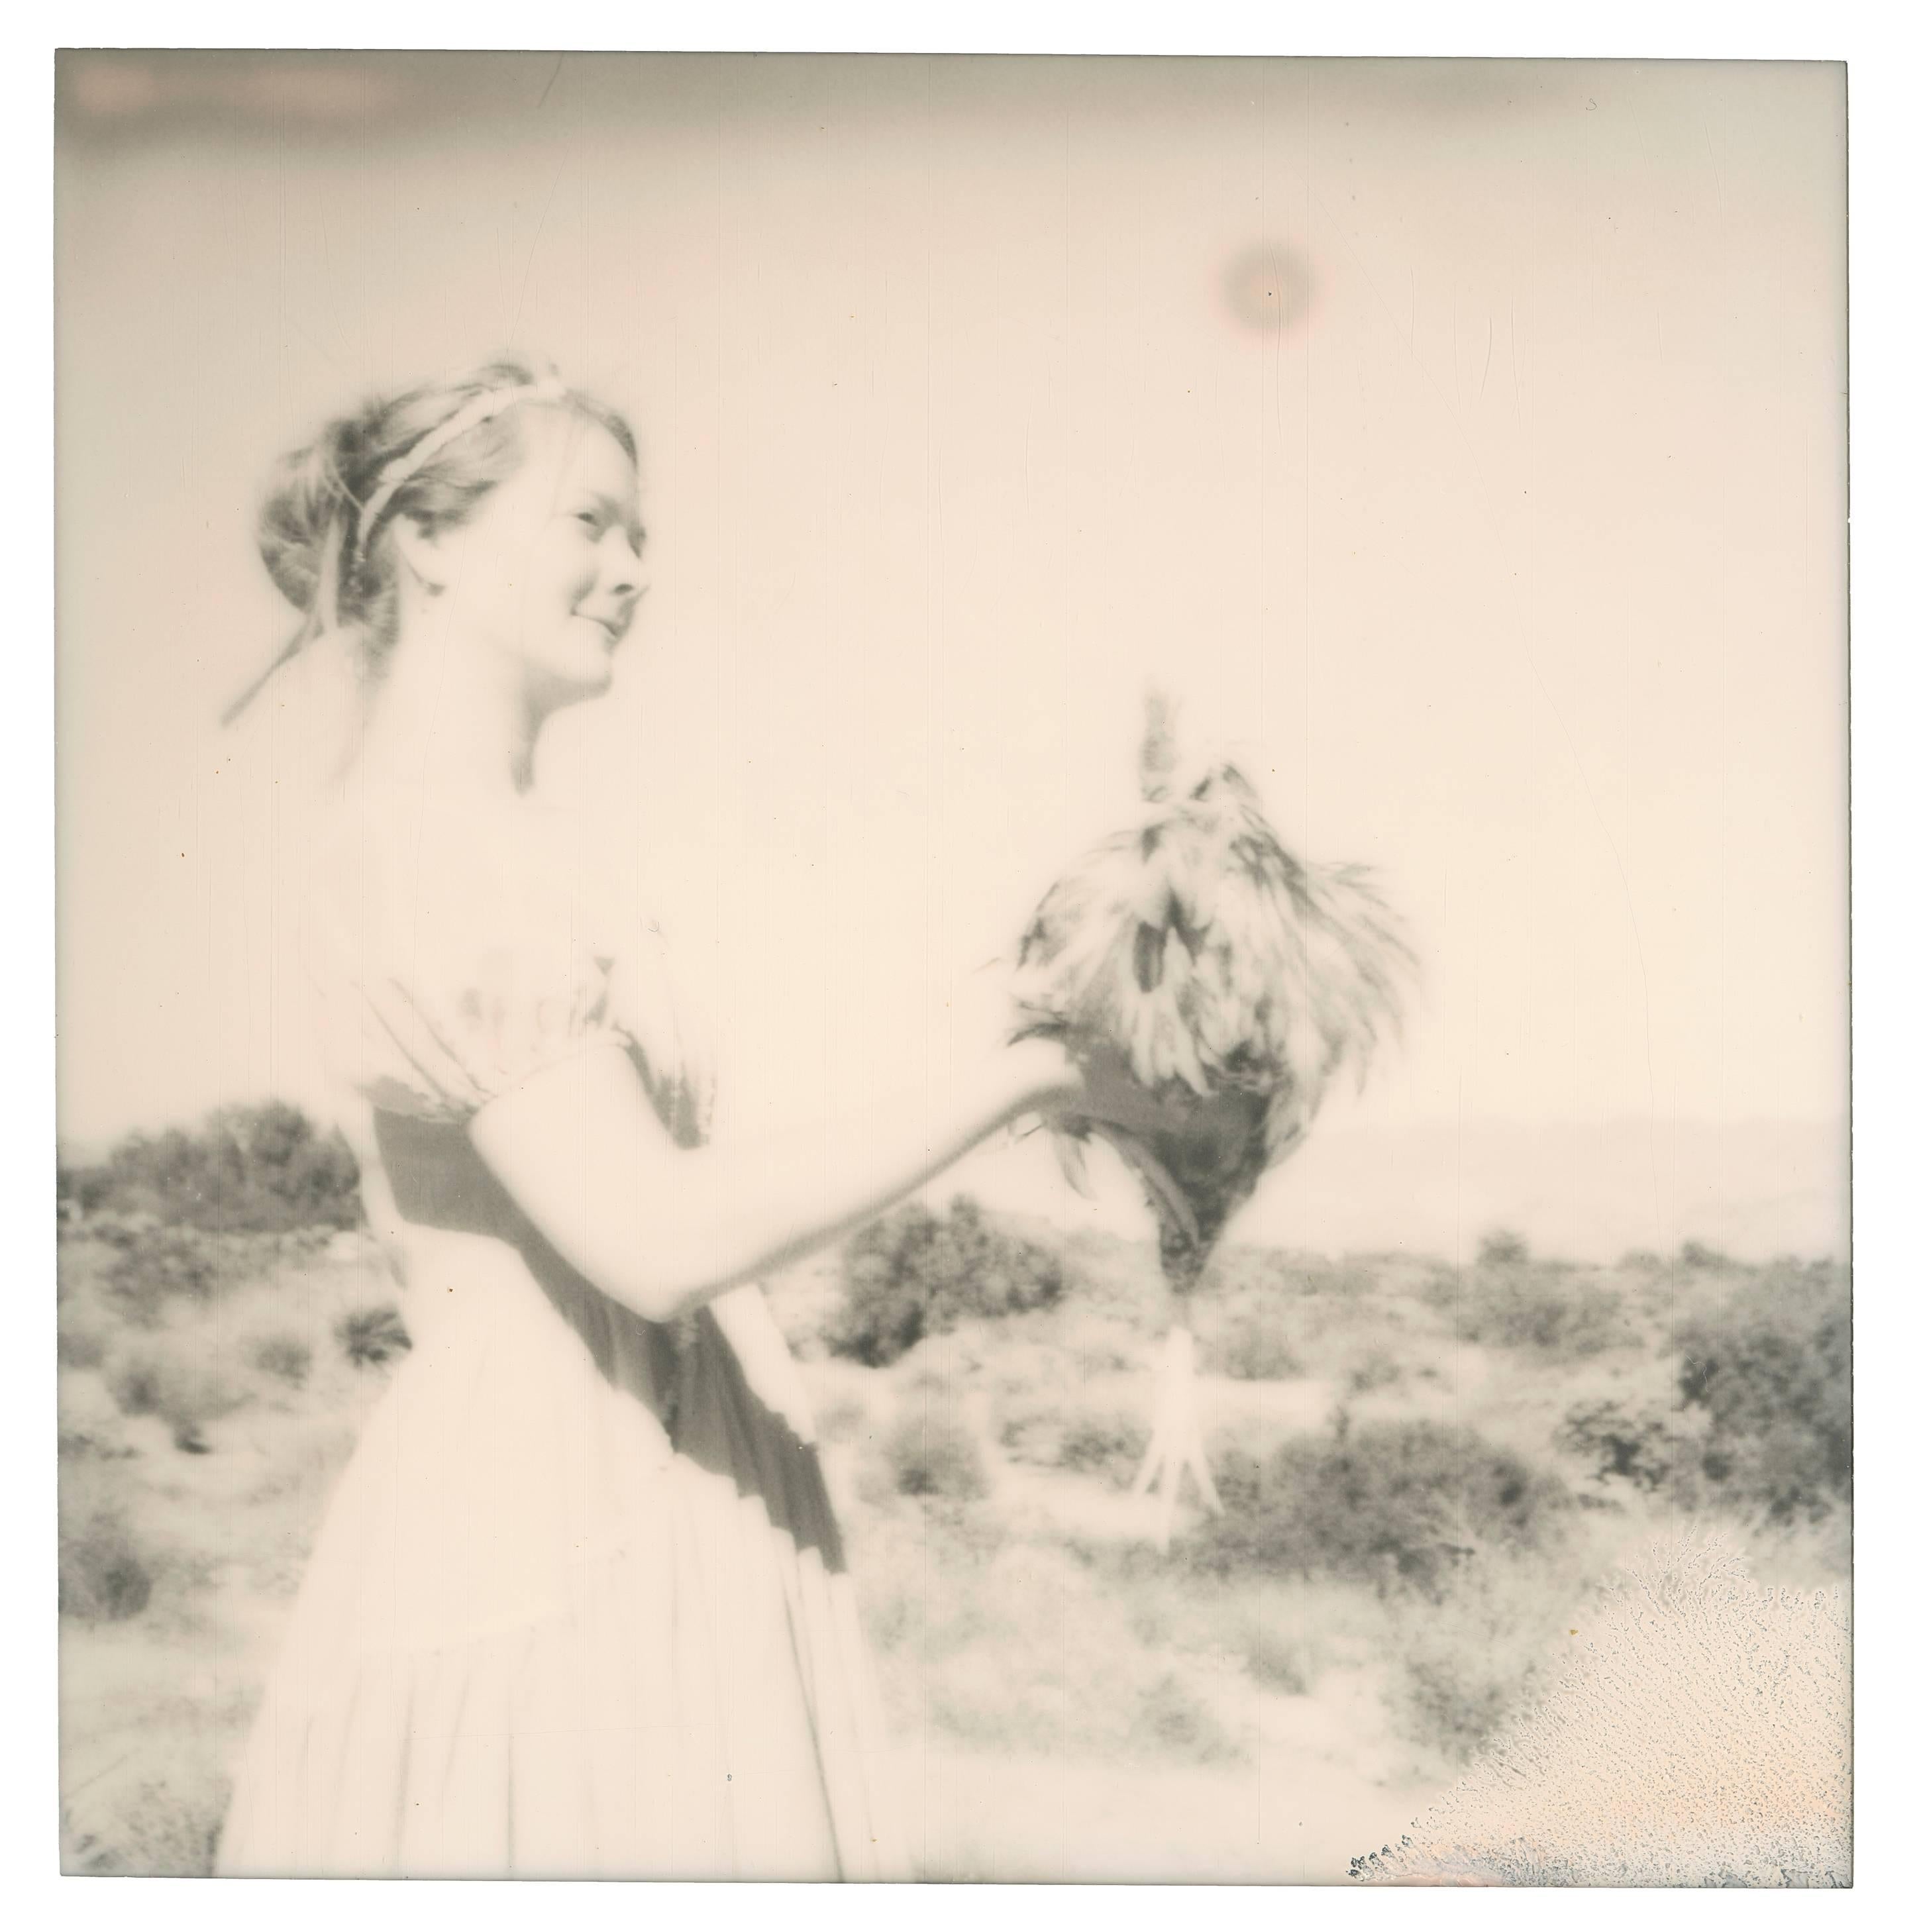 Danse de jeune fille (Chicks and Chicks) - Polaroid, contemporain, couleur